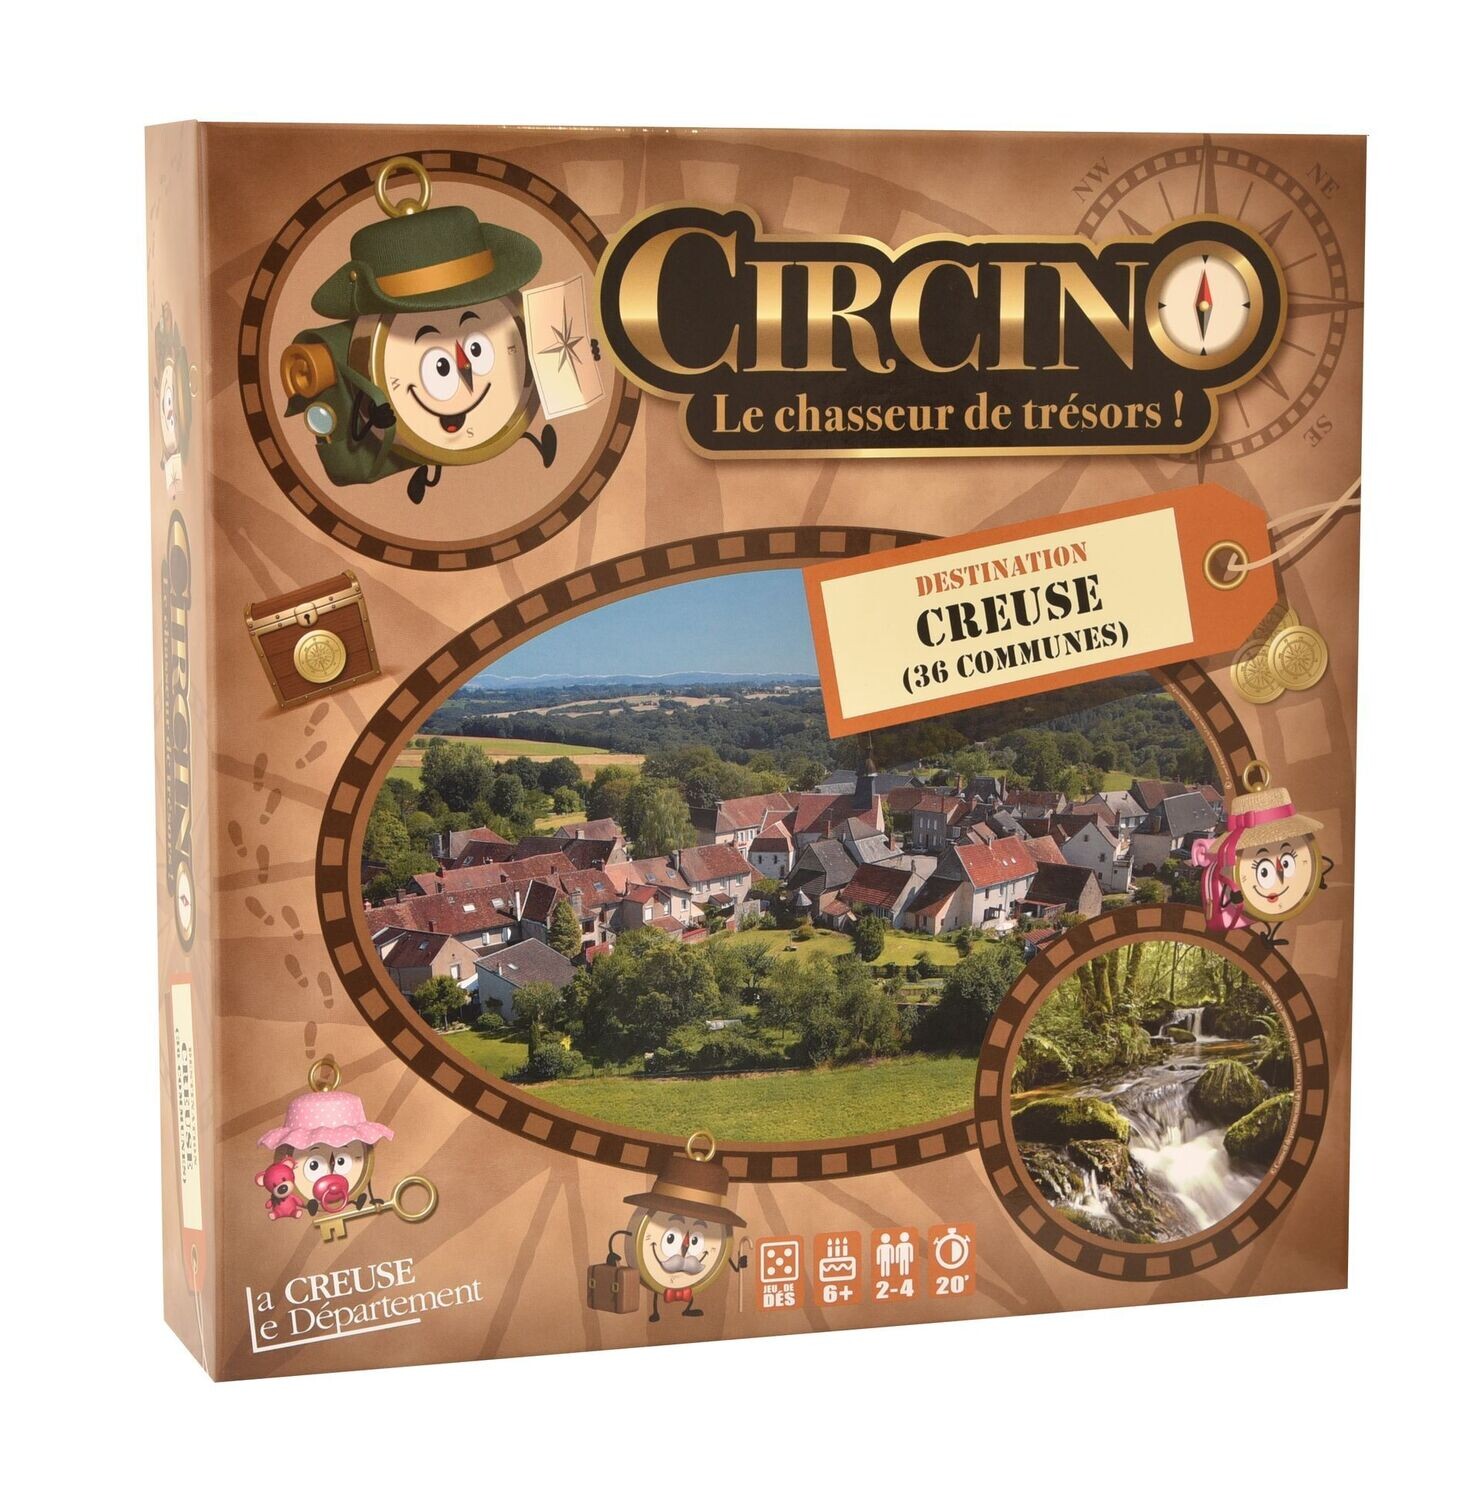 Circino, le Chasseur de Trésors - Destination Creuse